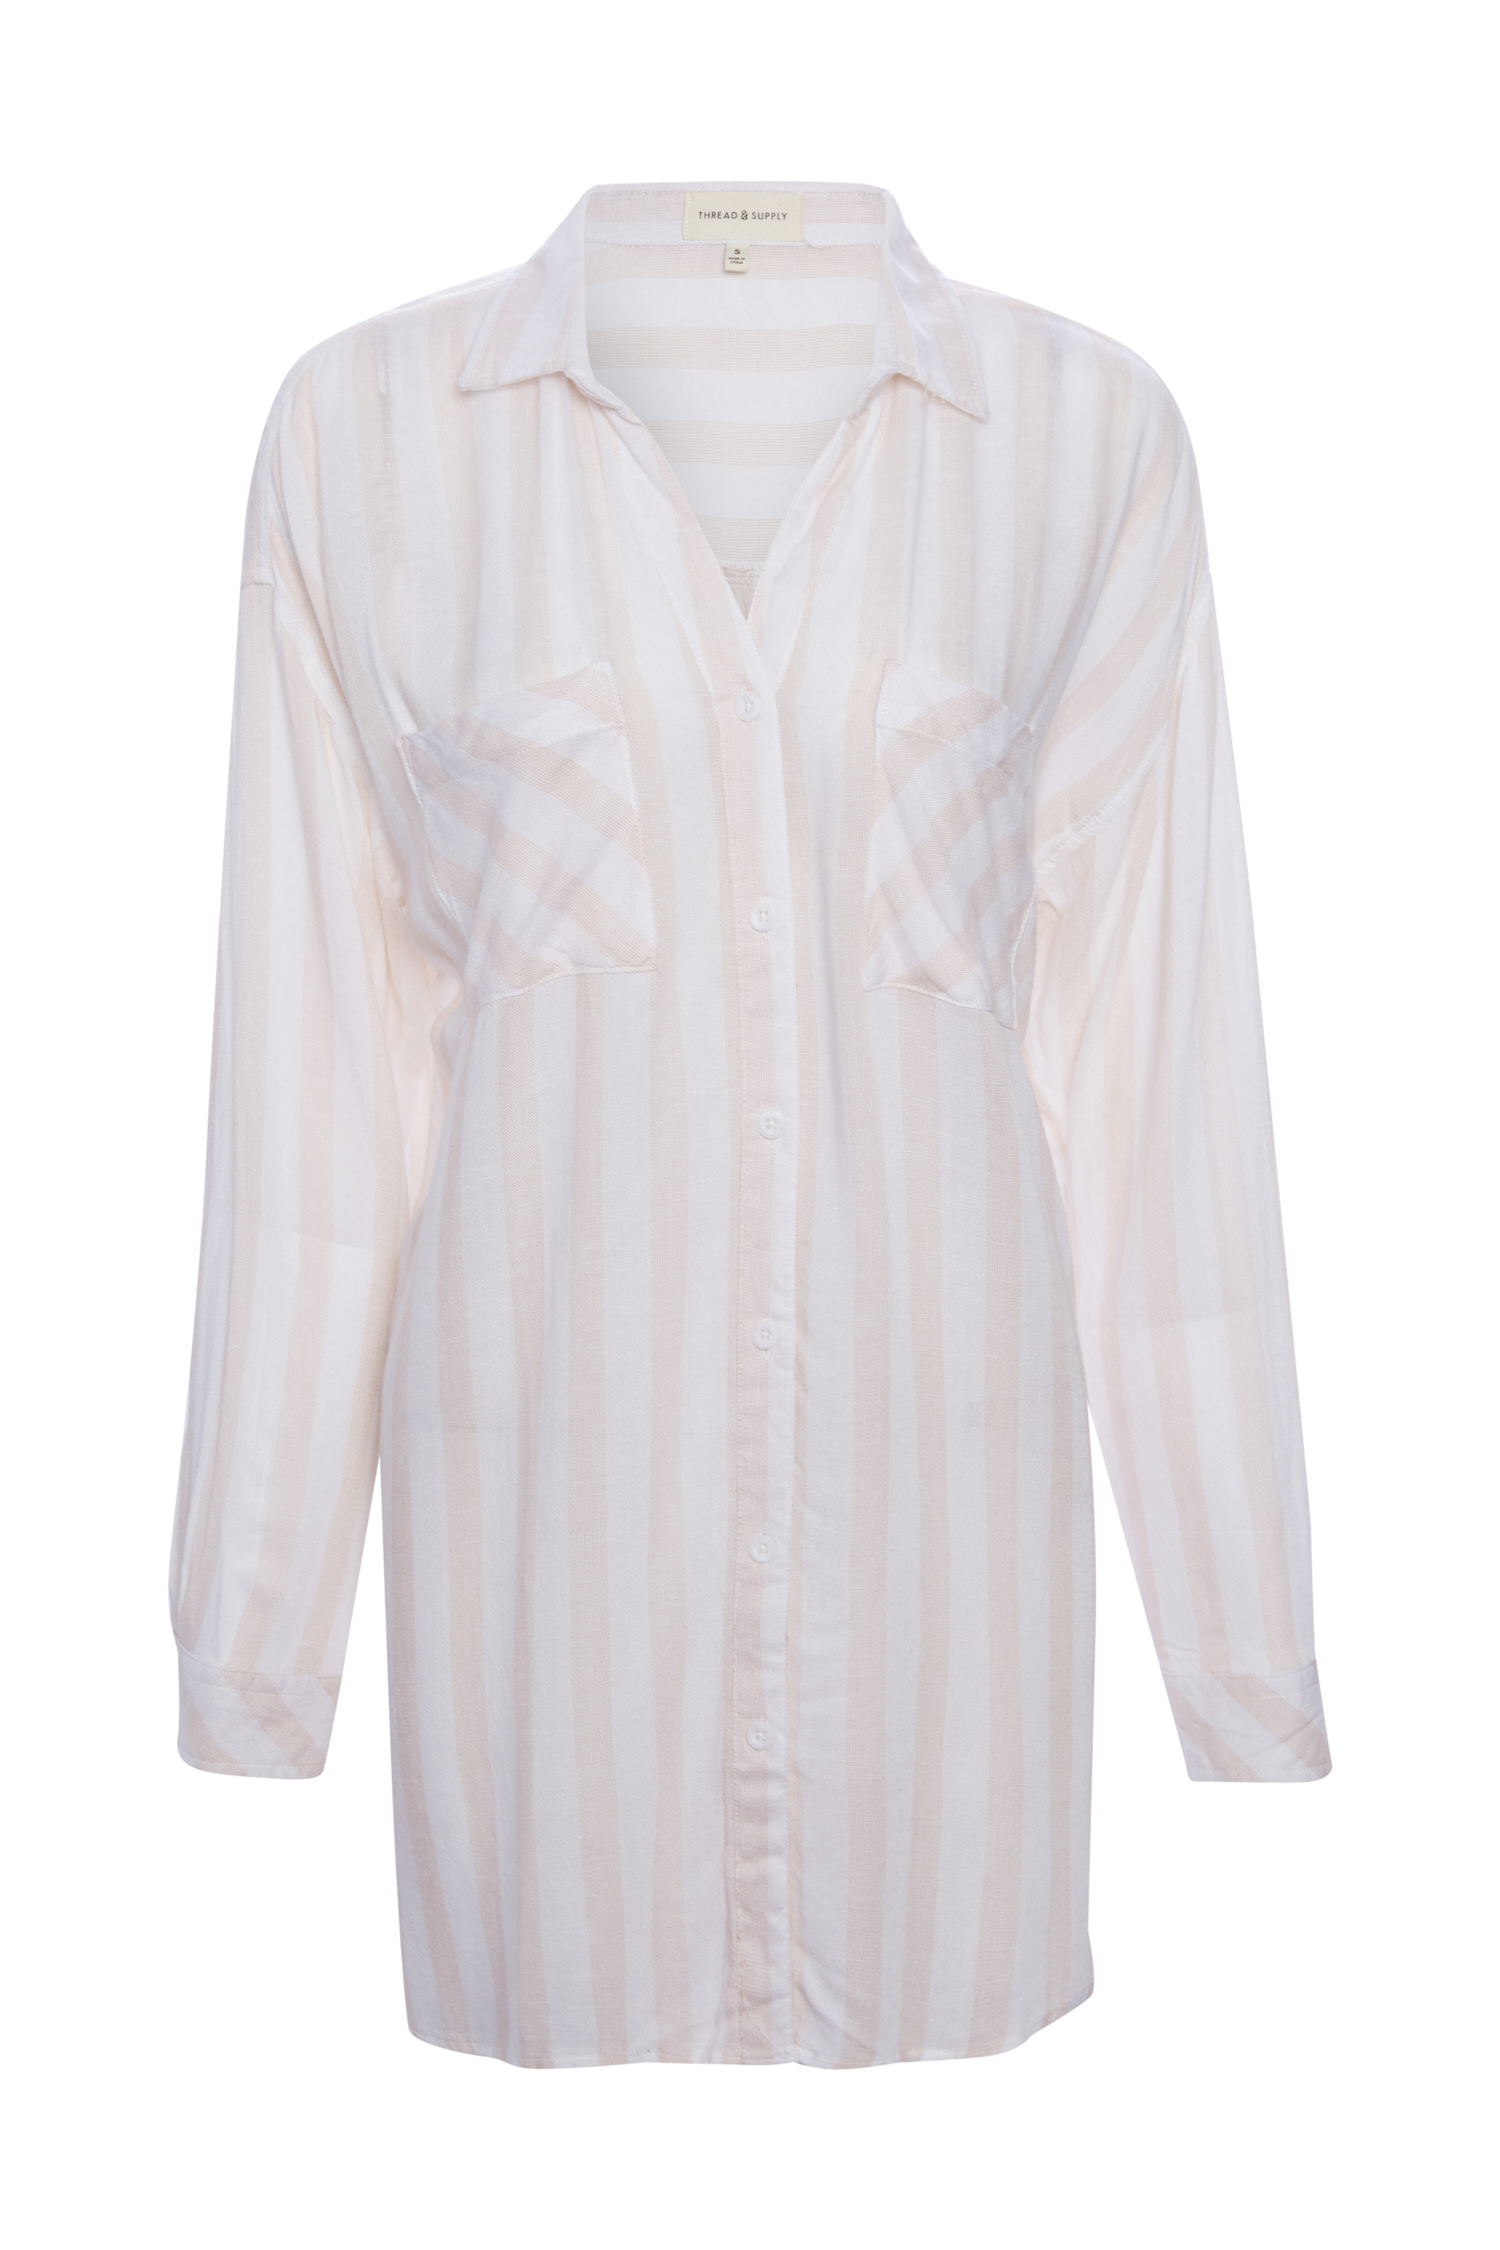 Thread & Supply Striped Tunic in White Multi S | DAILYLOOK